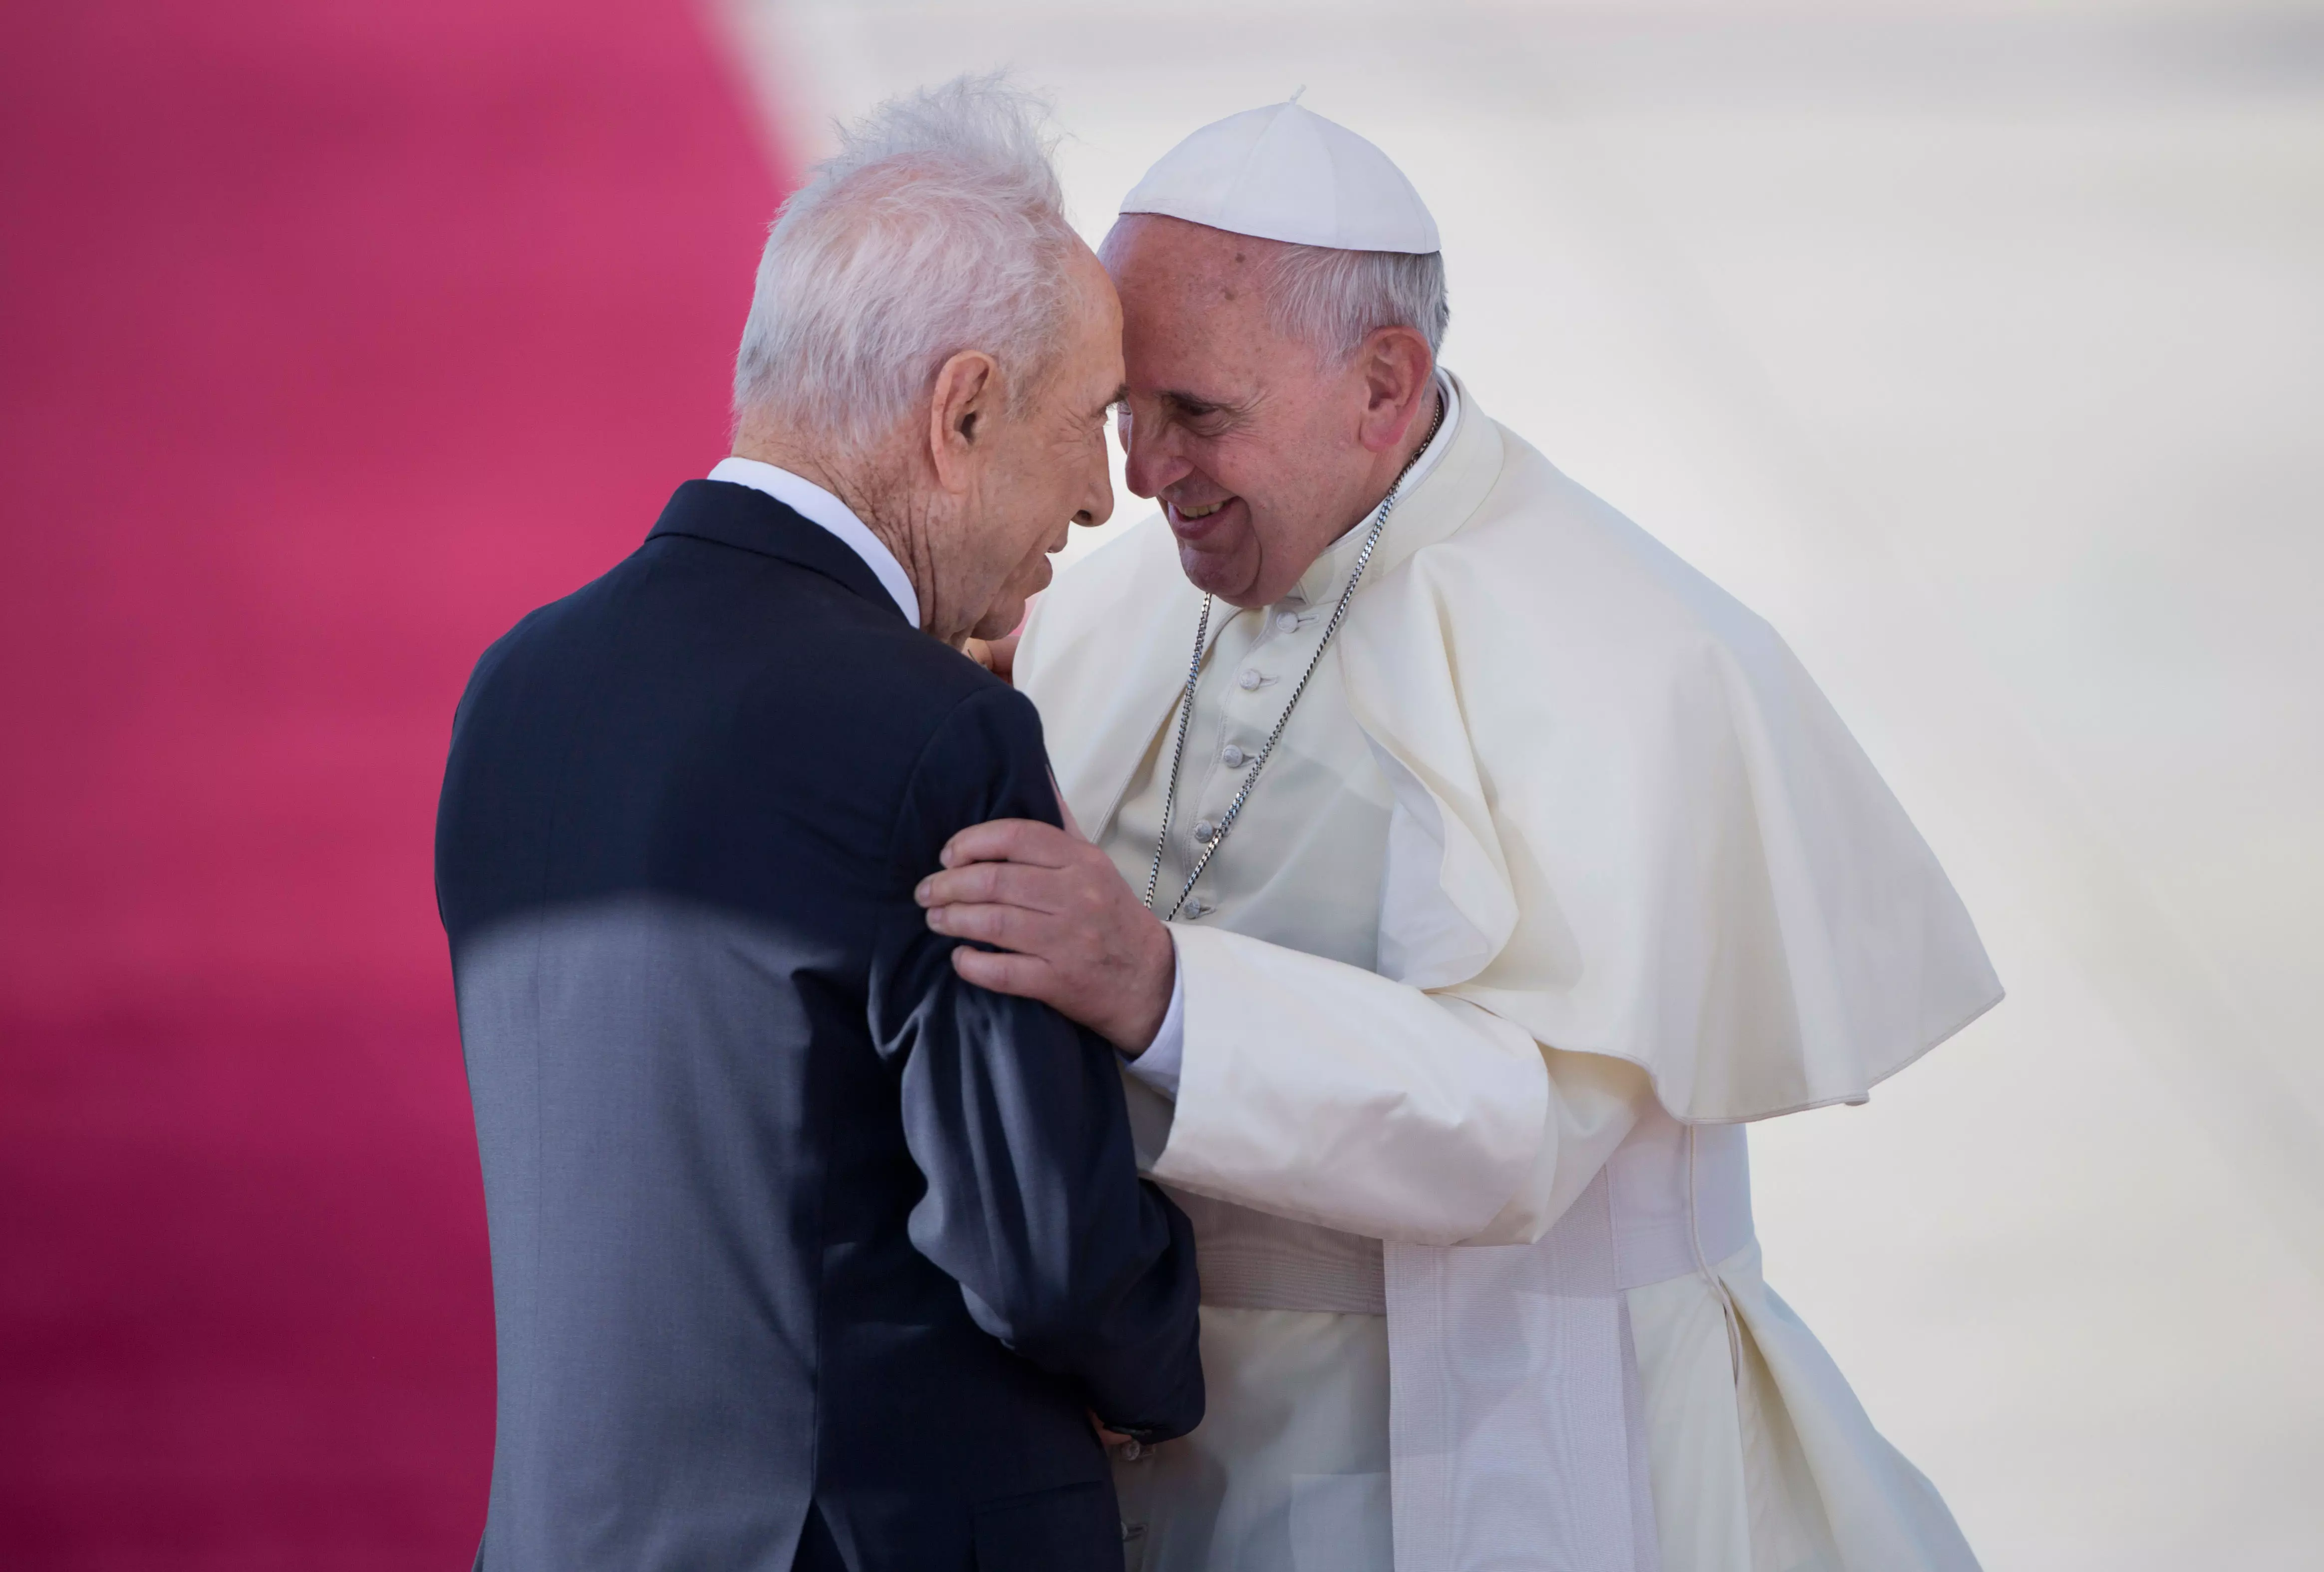 פרס הוזמן לתפילה המשותפת, ולא במקרה. הנשיא מקבל את פניו של האפיפיור בנמל התעופה בן גוריון